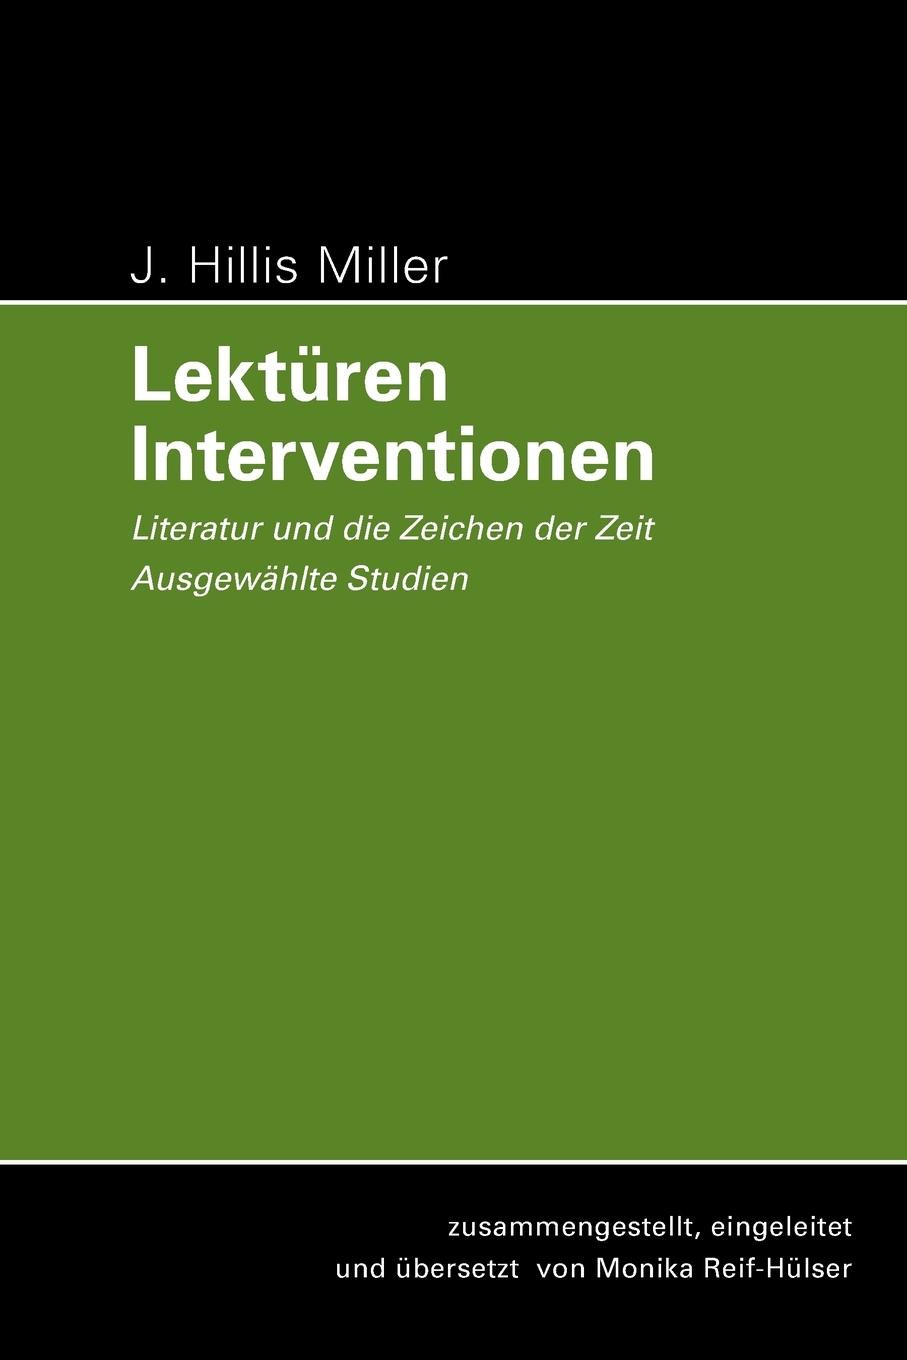 Lektueren - Interventionen - Miller, J. Hillis